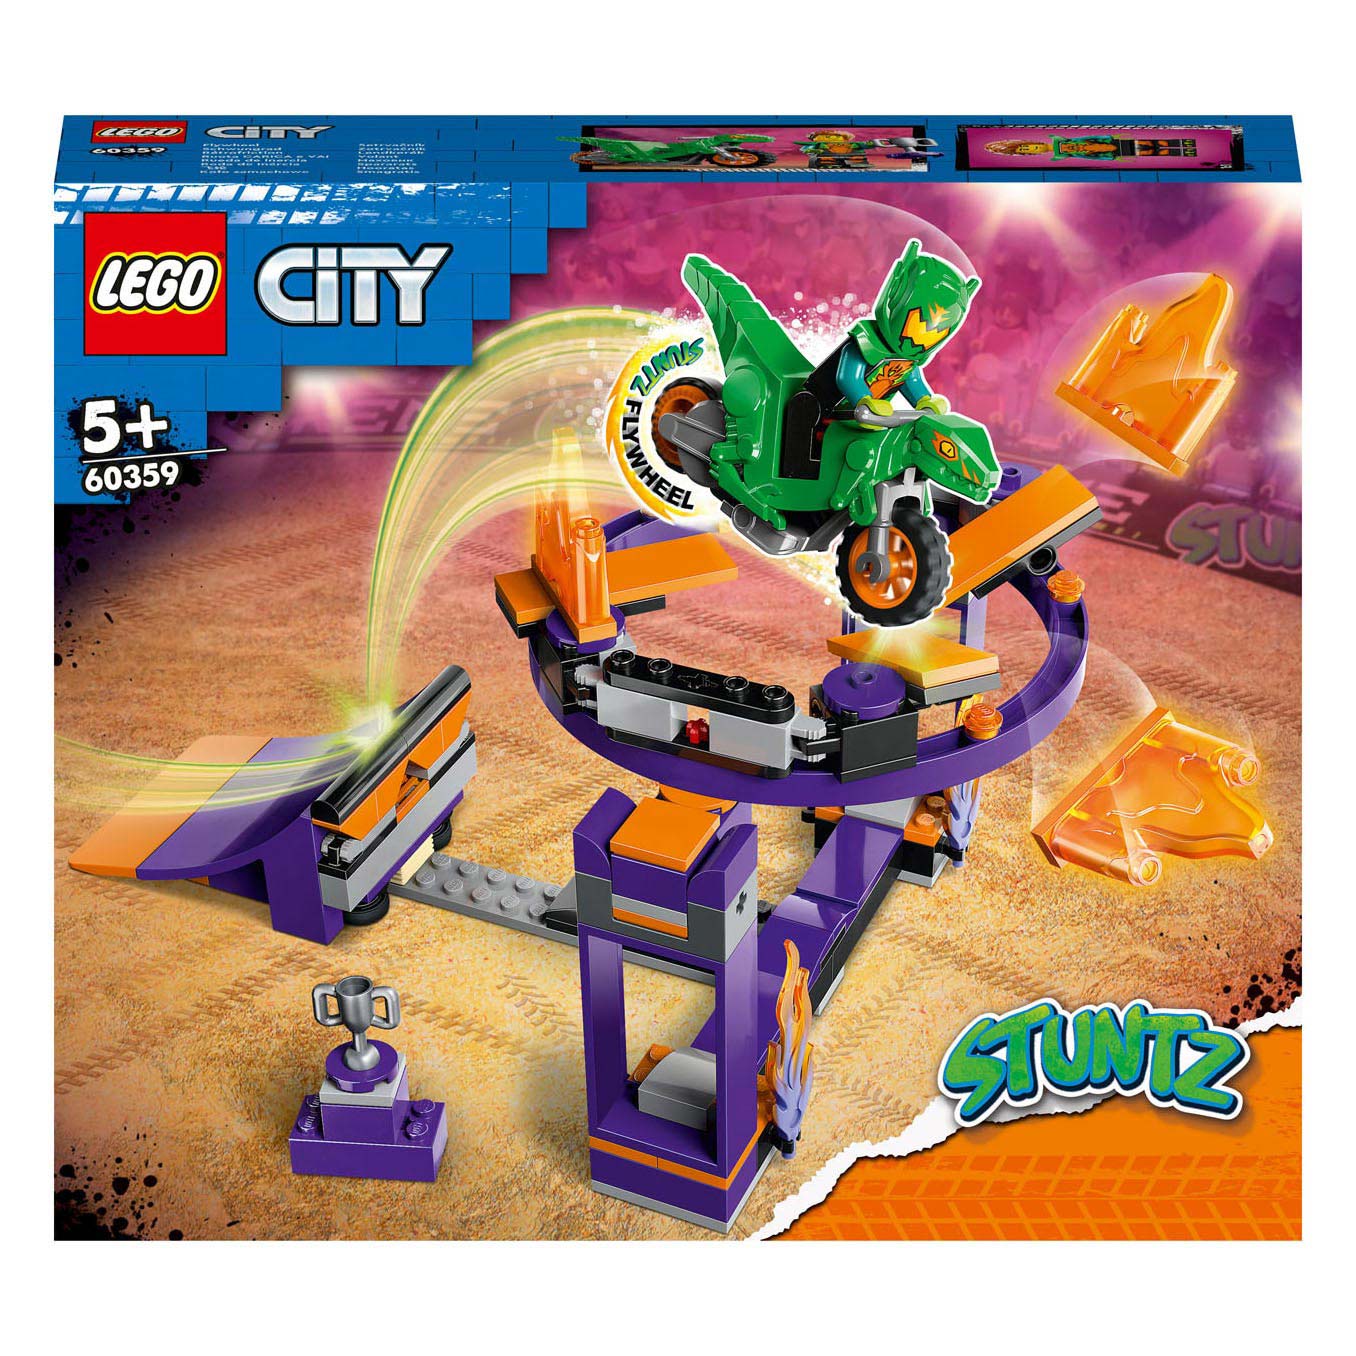 LEGO City 60359 Herausforderung: Eintauchen mit Stunt-Strecke